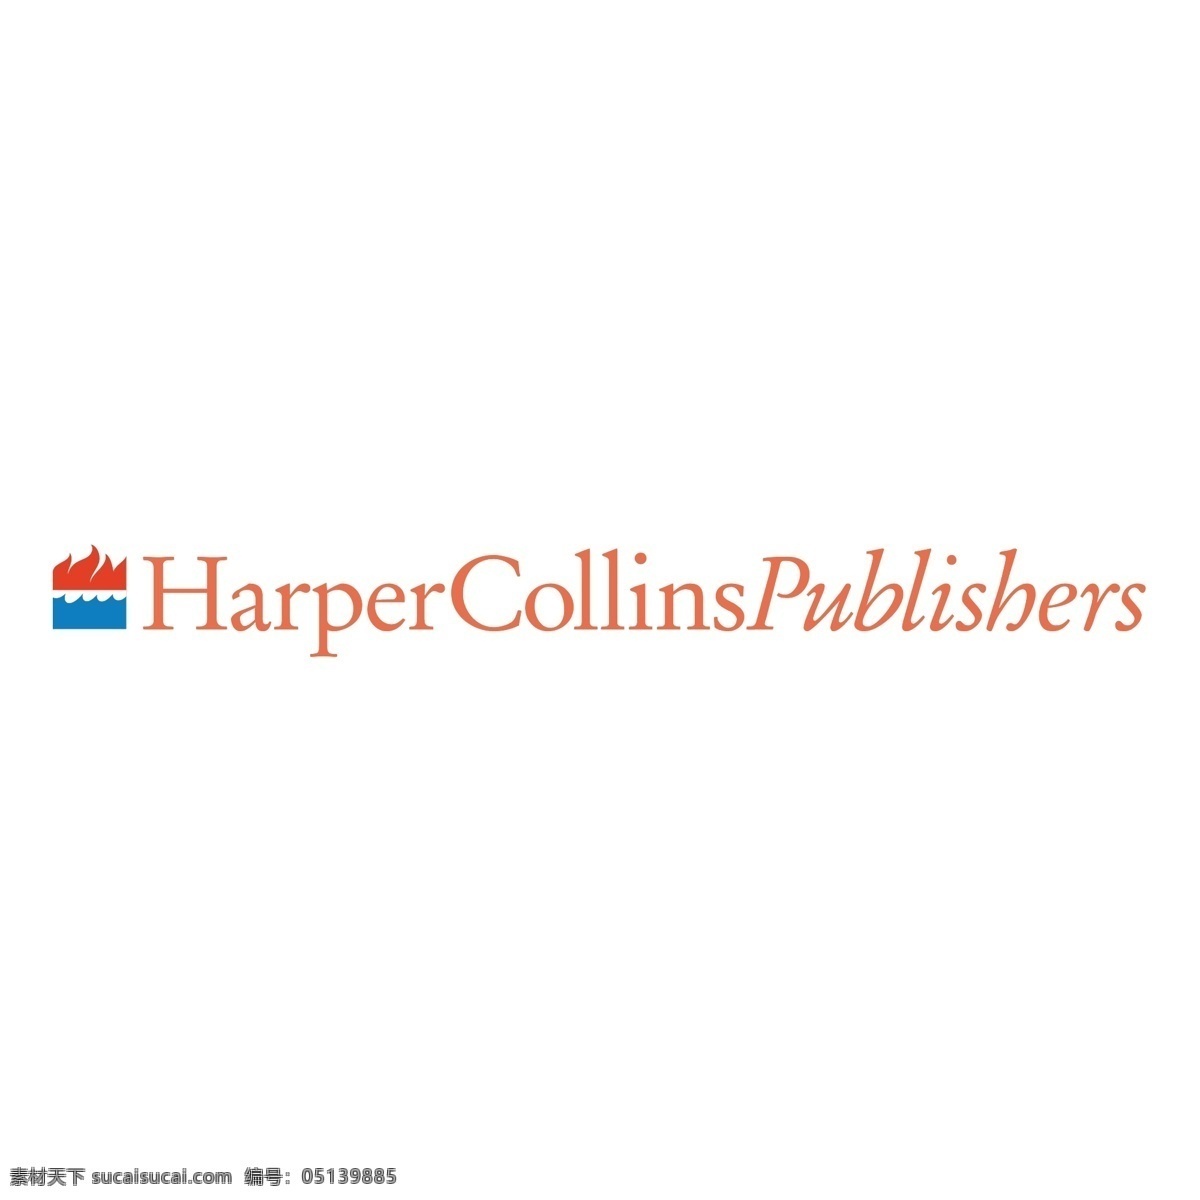 哈珀 柯林斯 出版社 出版商 矢量图 其他矢量图